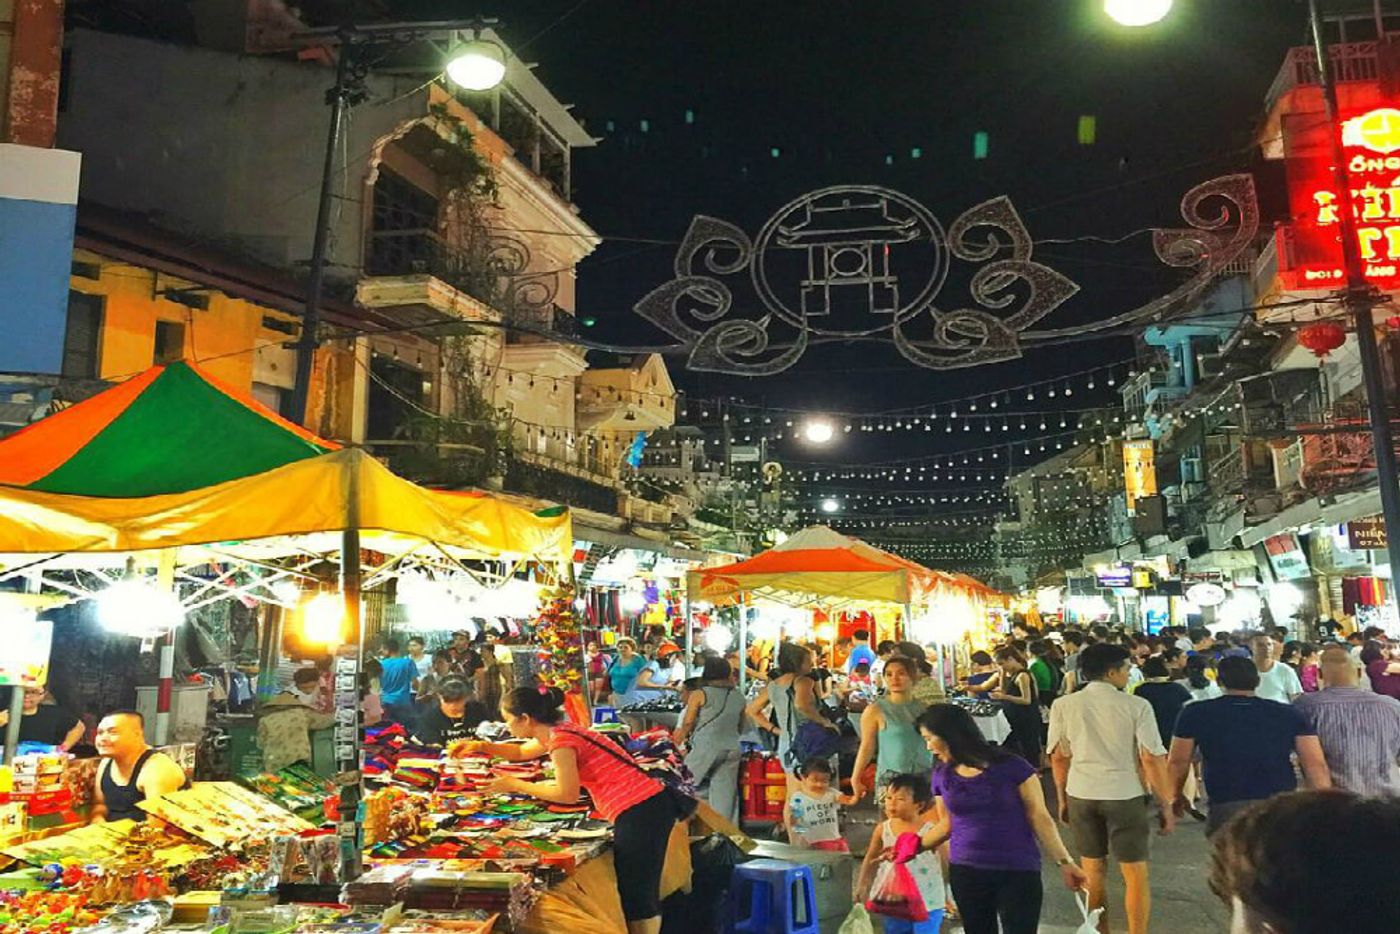 Go shopping at Ha Noi night market